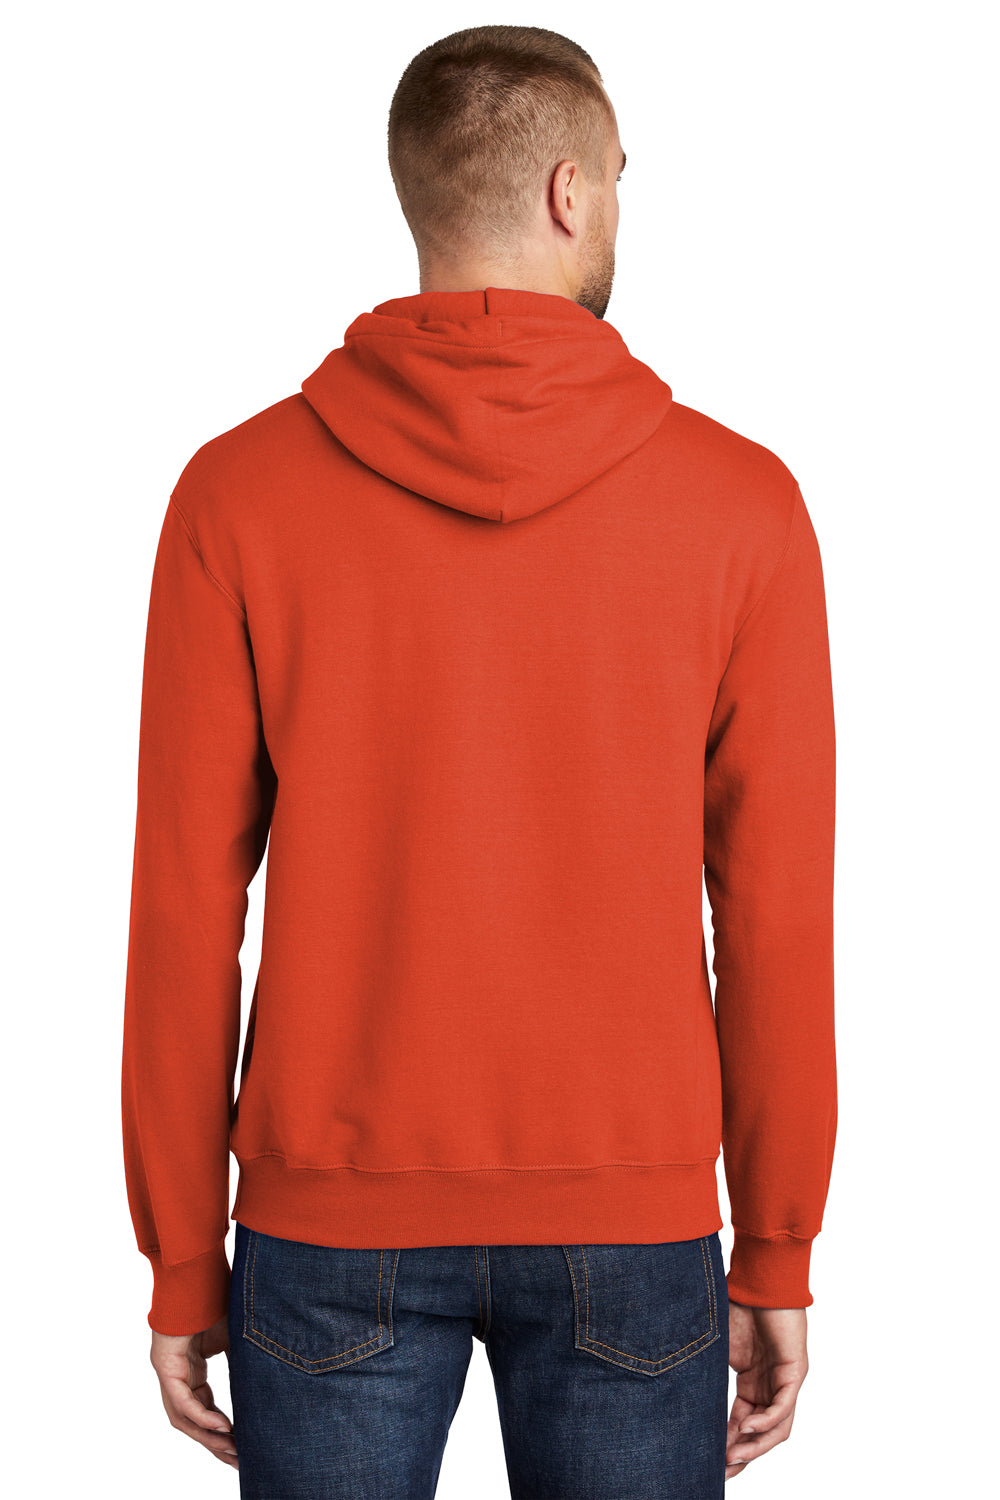 Port & Company PC90H Mens Essential Fleece Hooded Sweatshirt Hoodie Orange Side